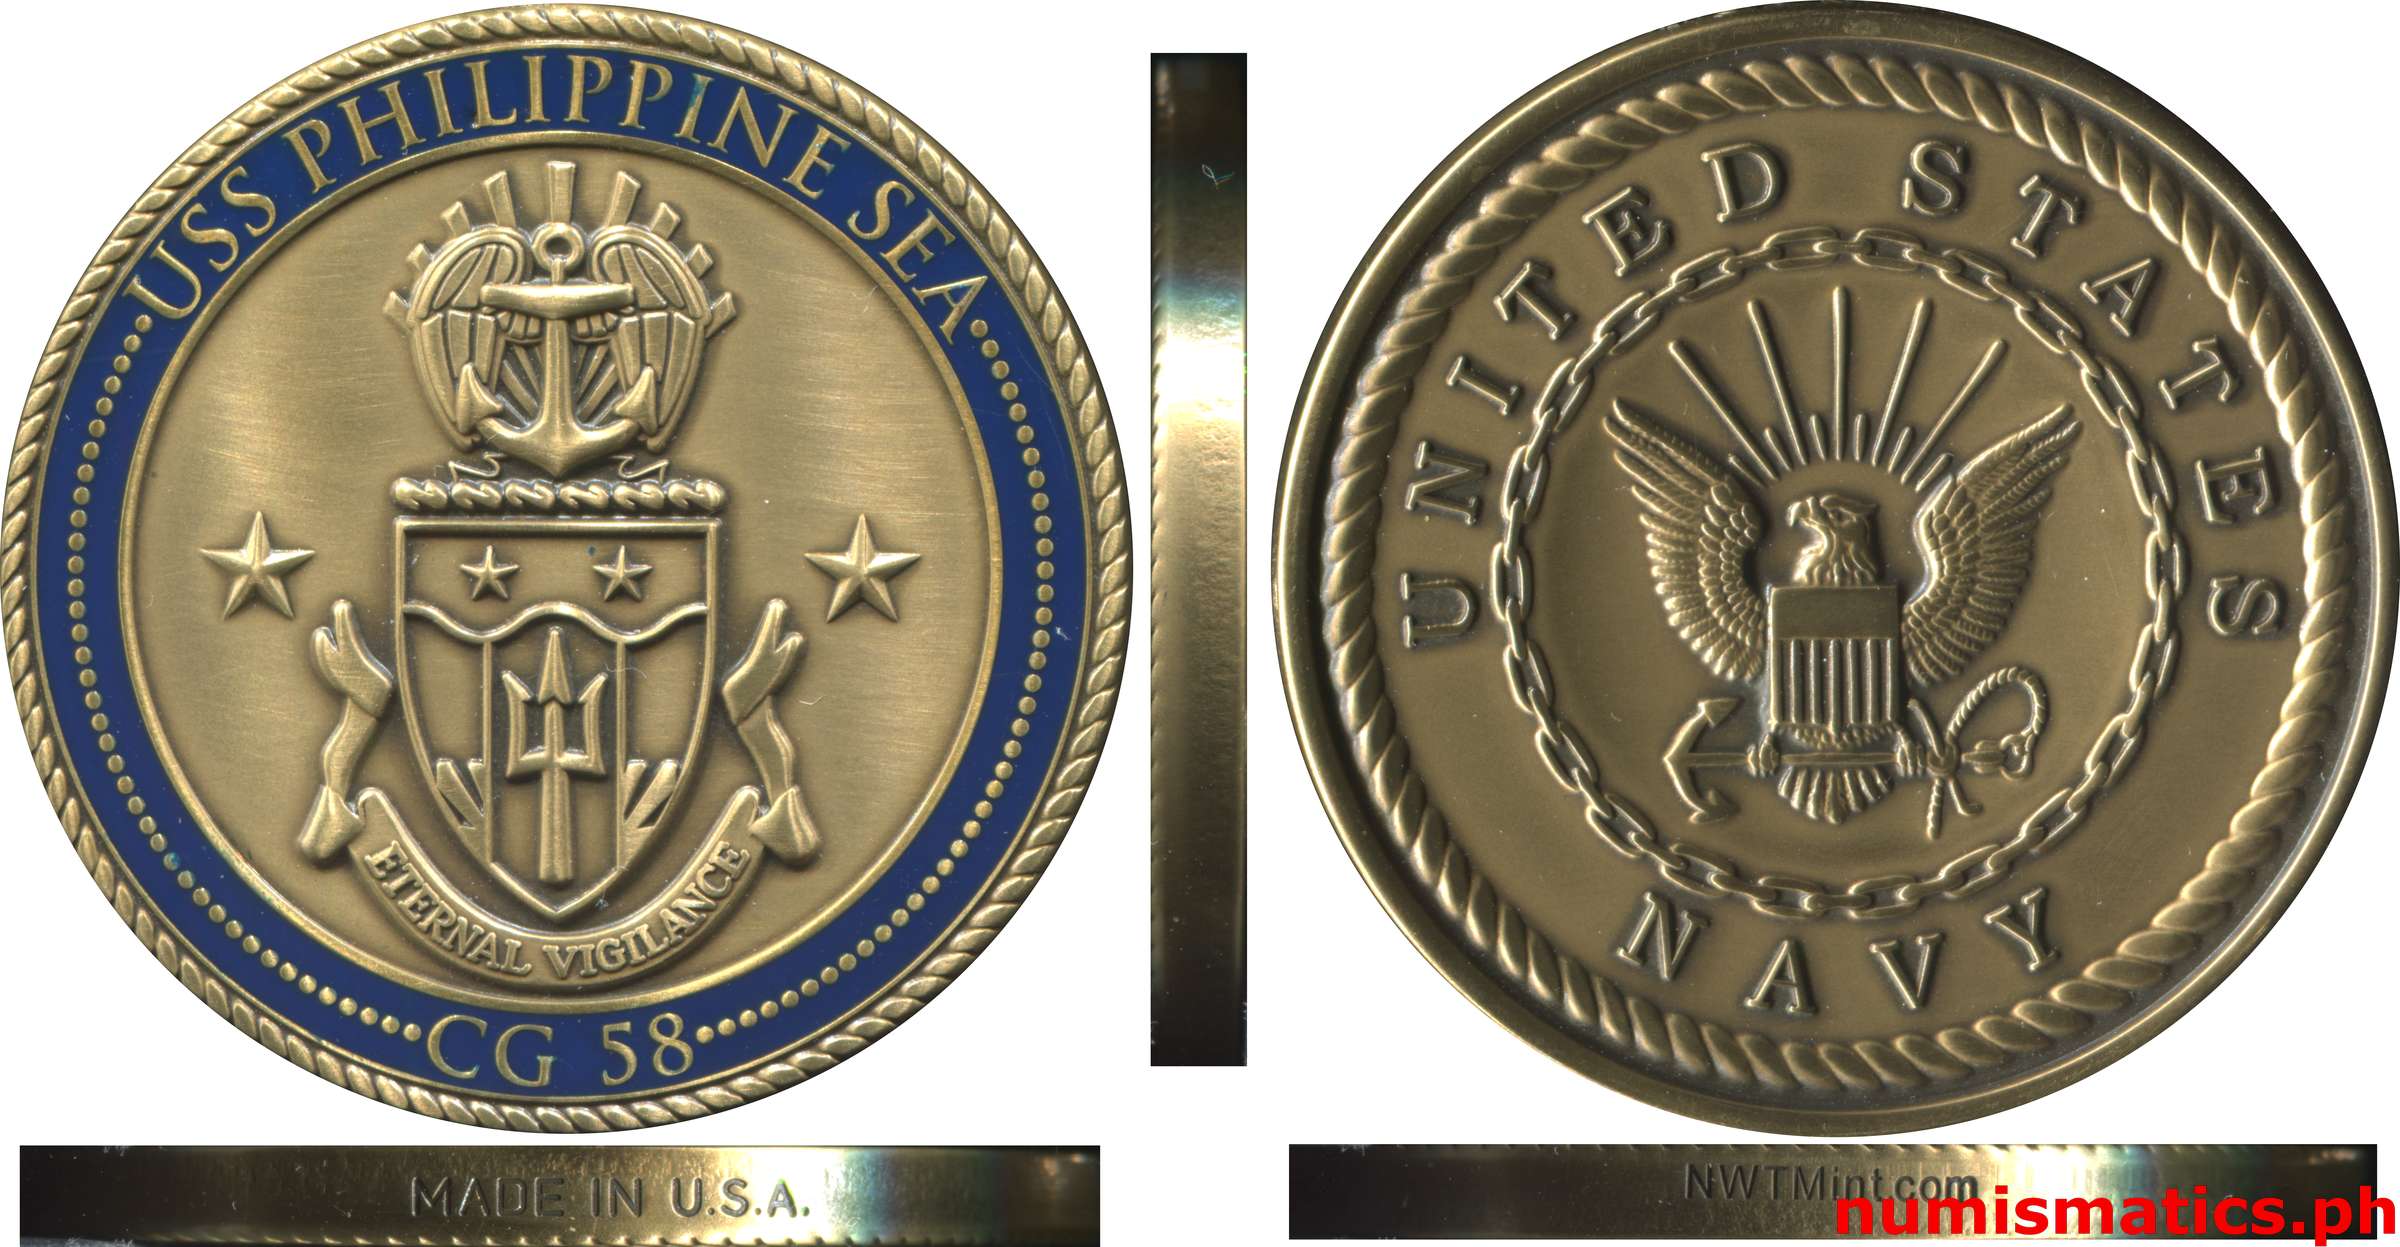 USS Philippine Sea - CG 58 Eternal Vigilance Challenge Coin